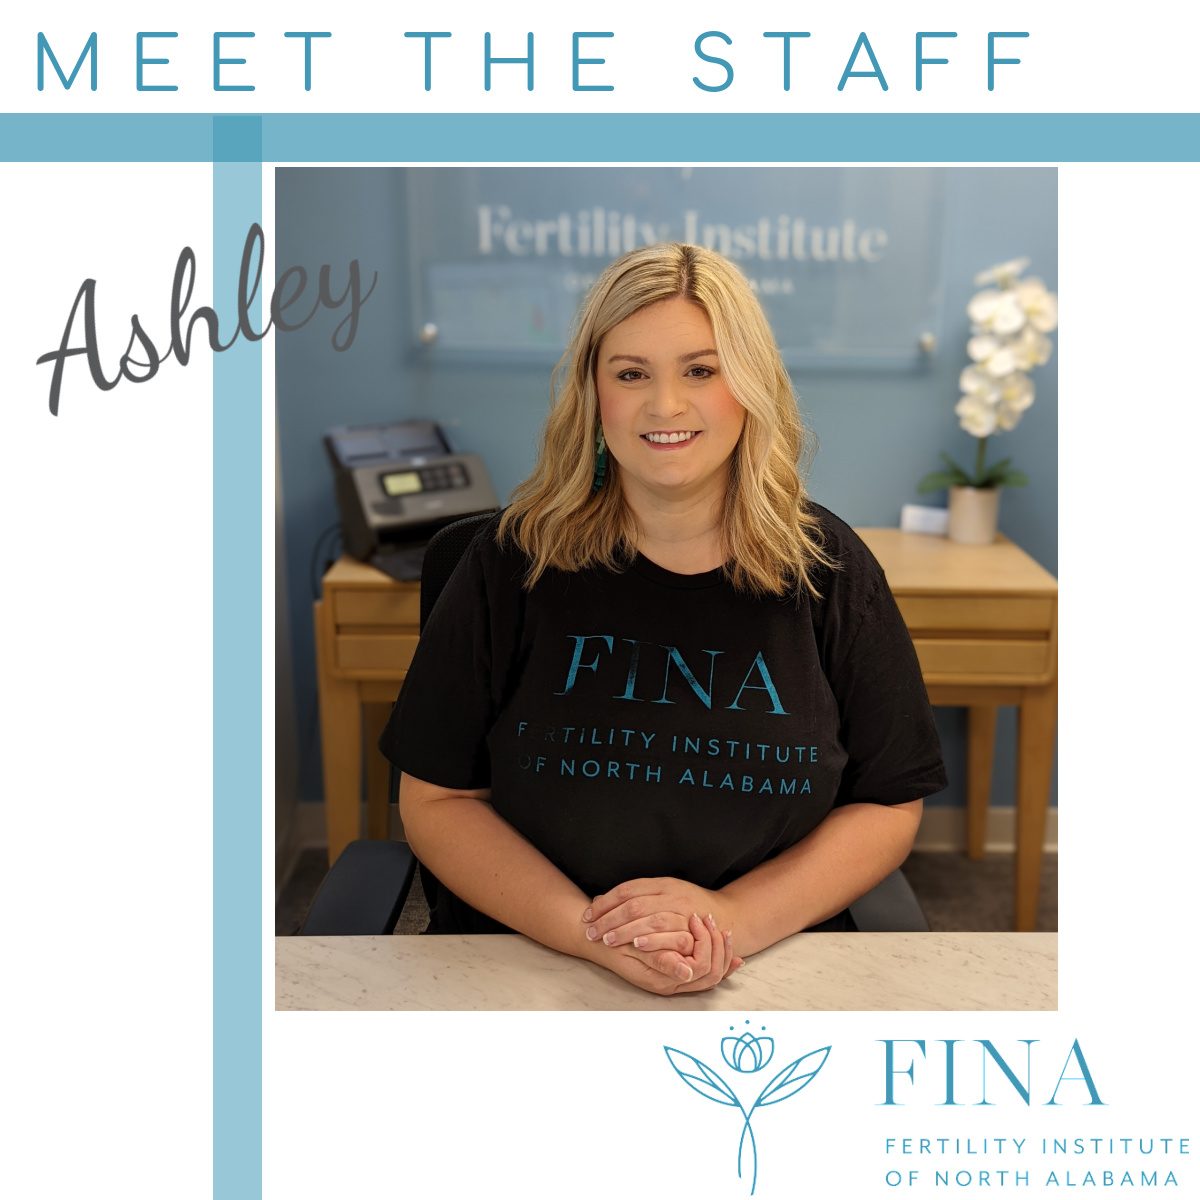 Meet Ashley, FINA’s newest team member!